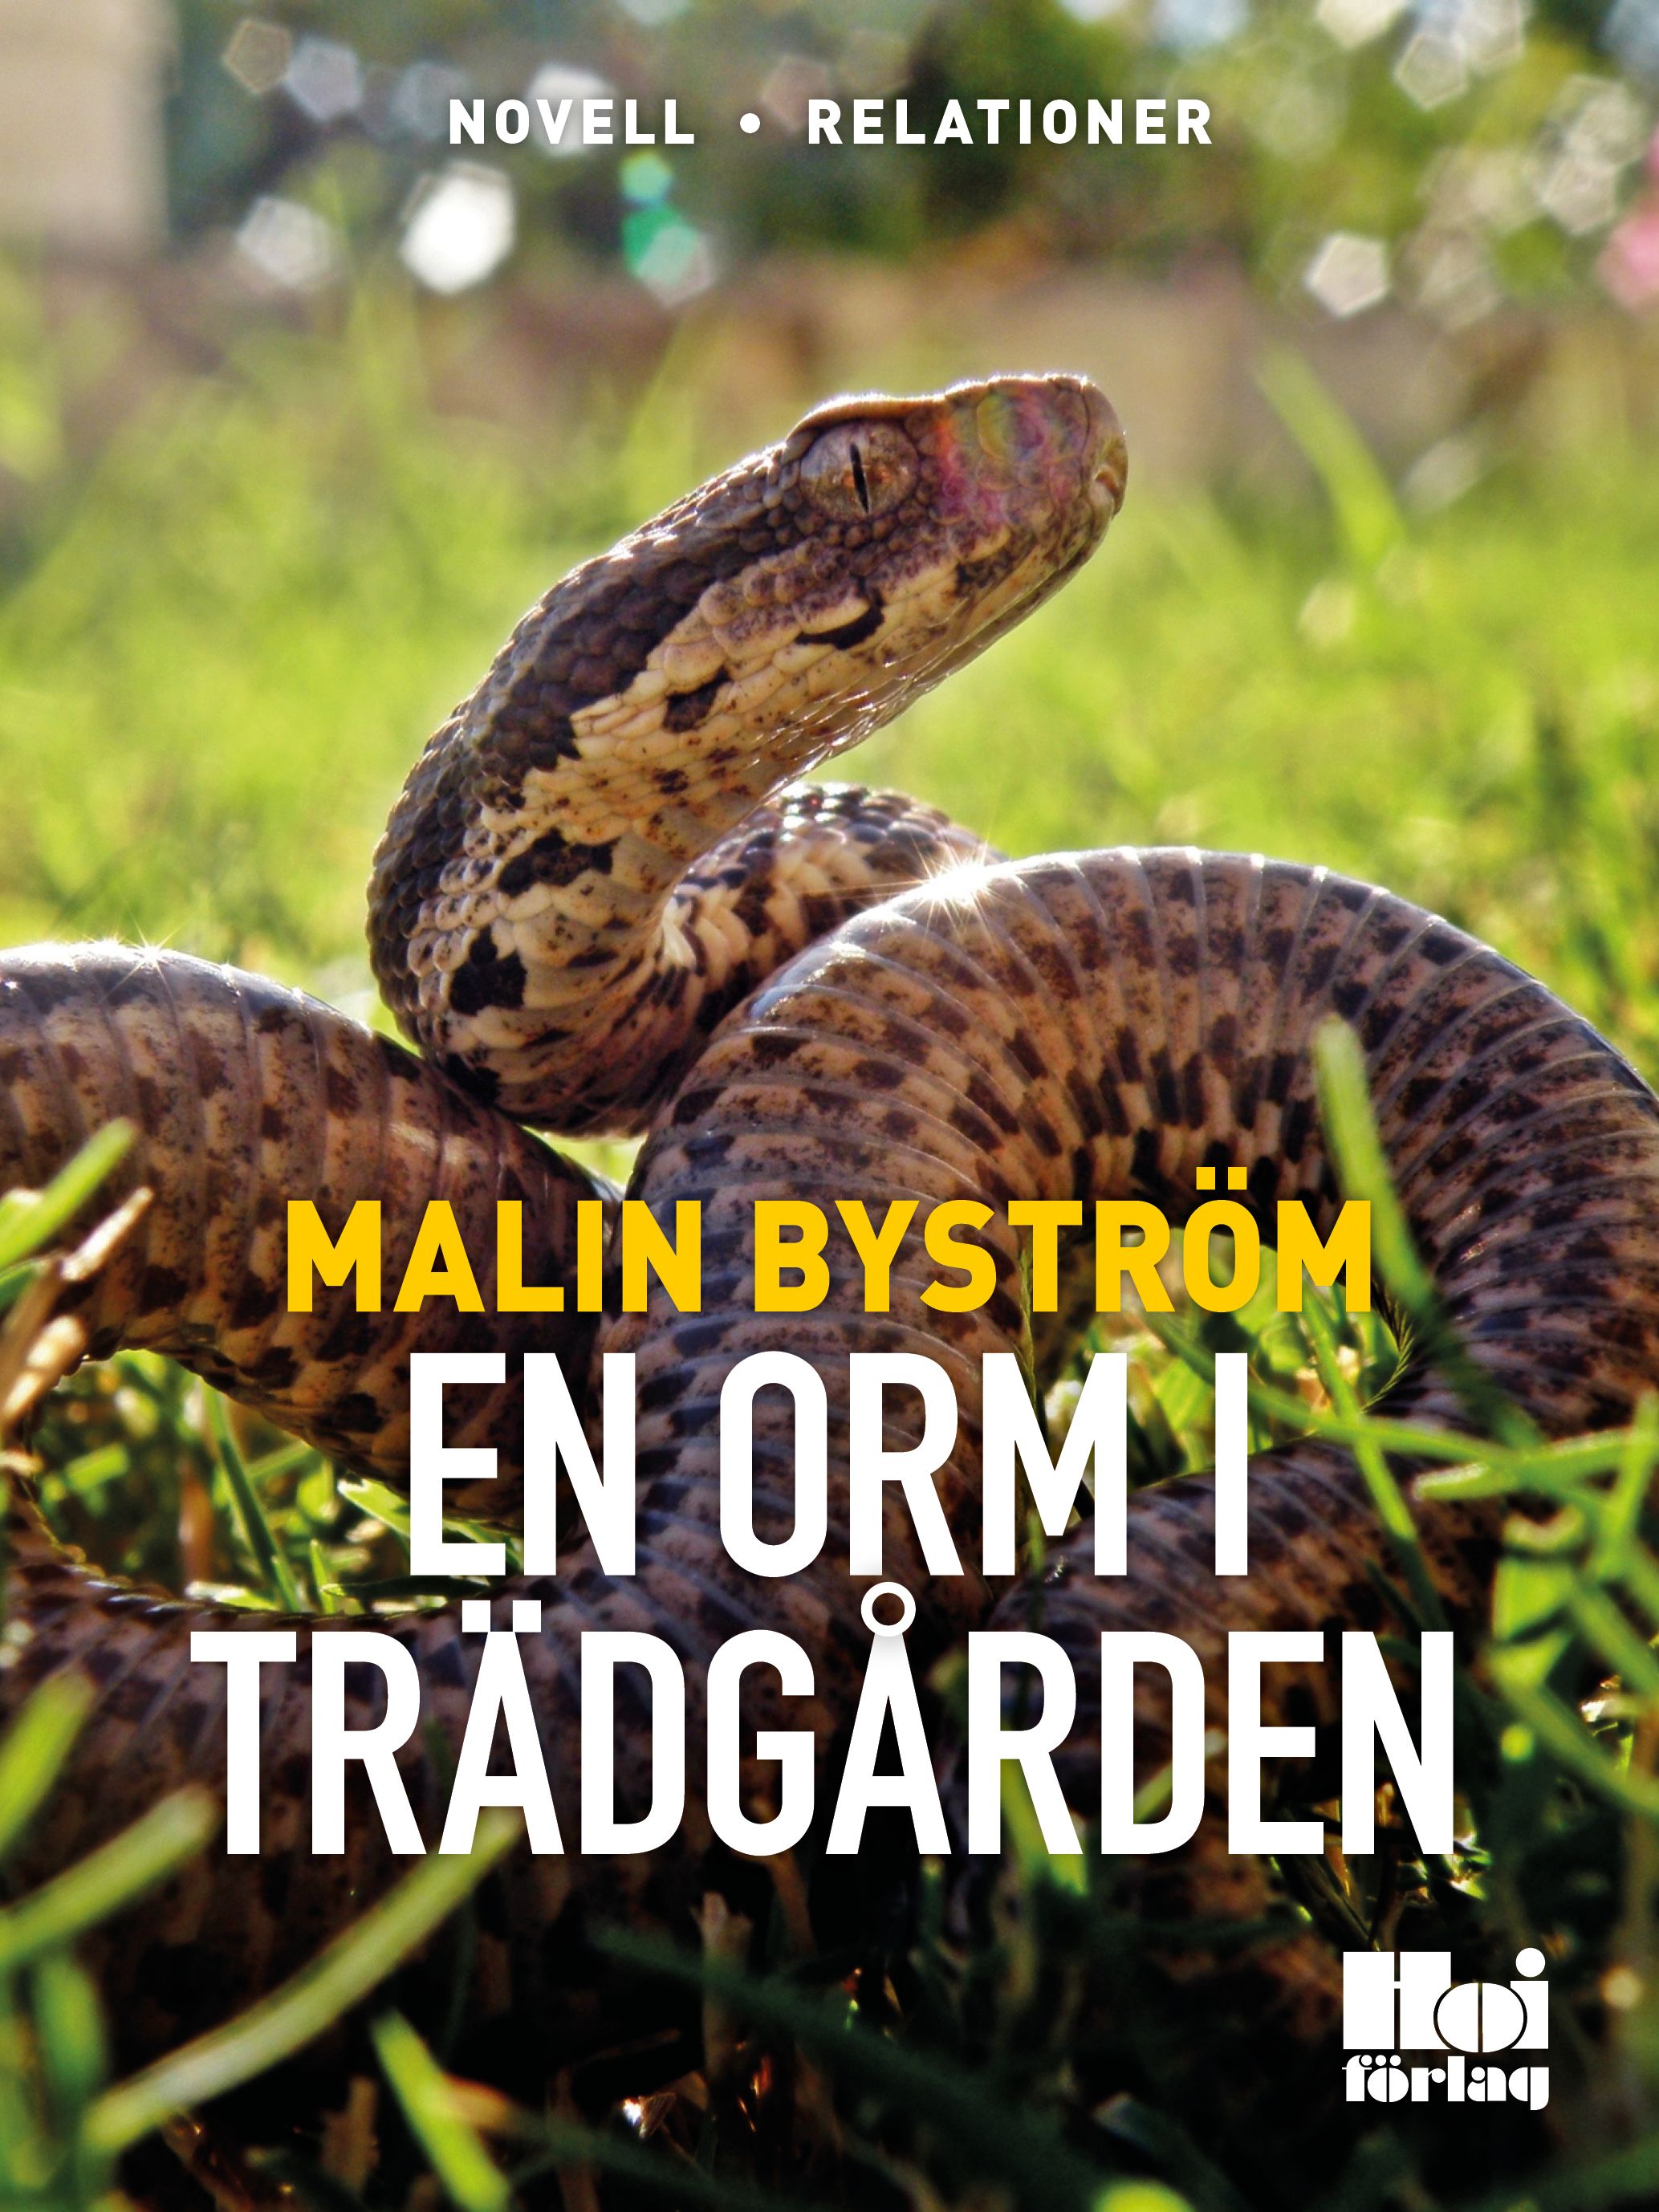 En orm i trädgården, e-bog af Malin Byström